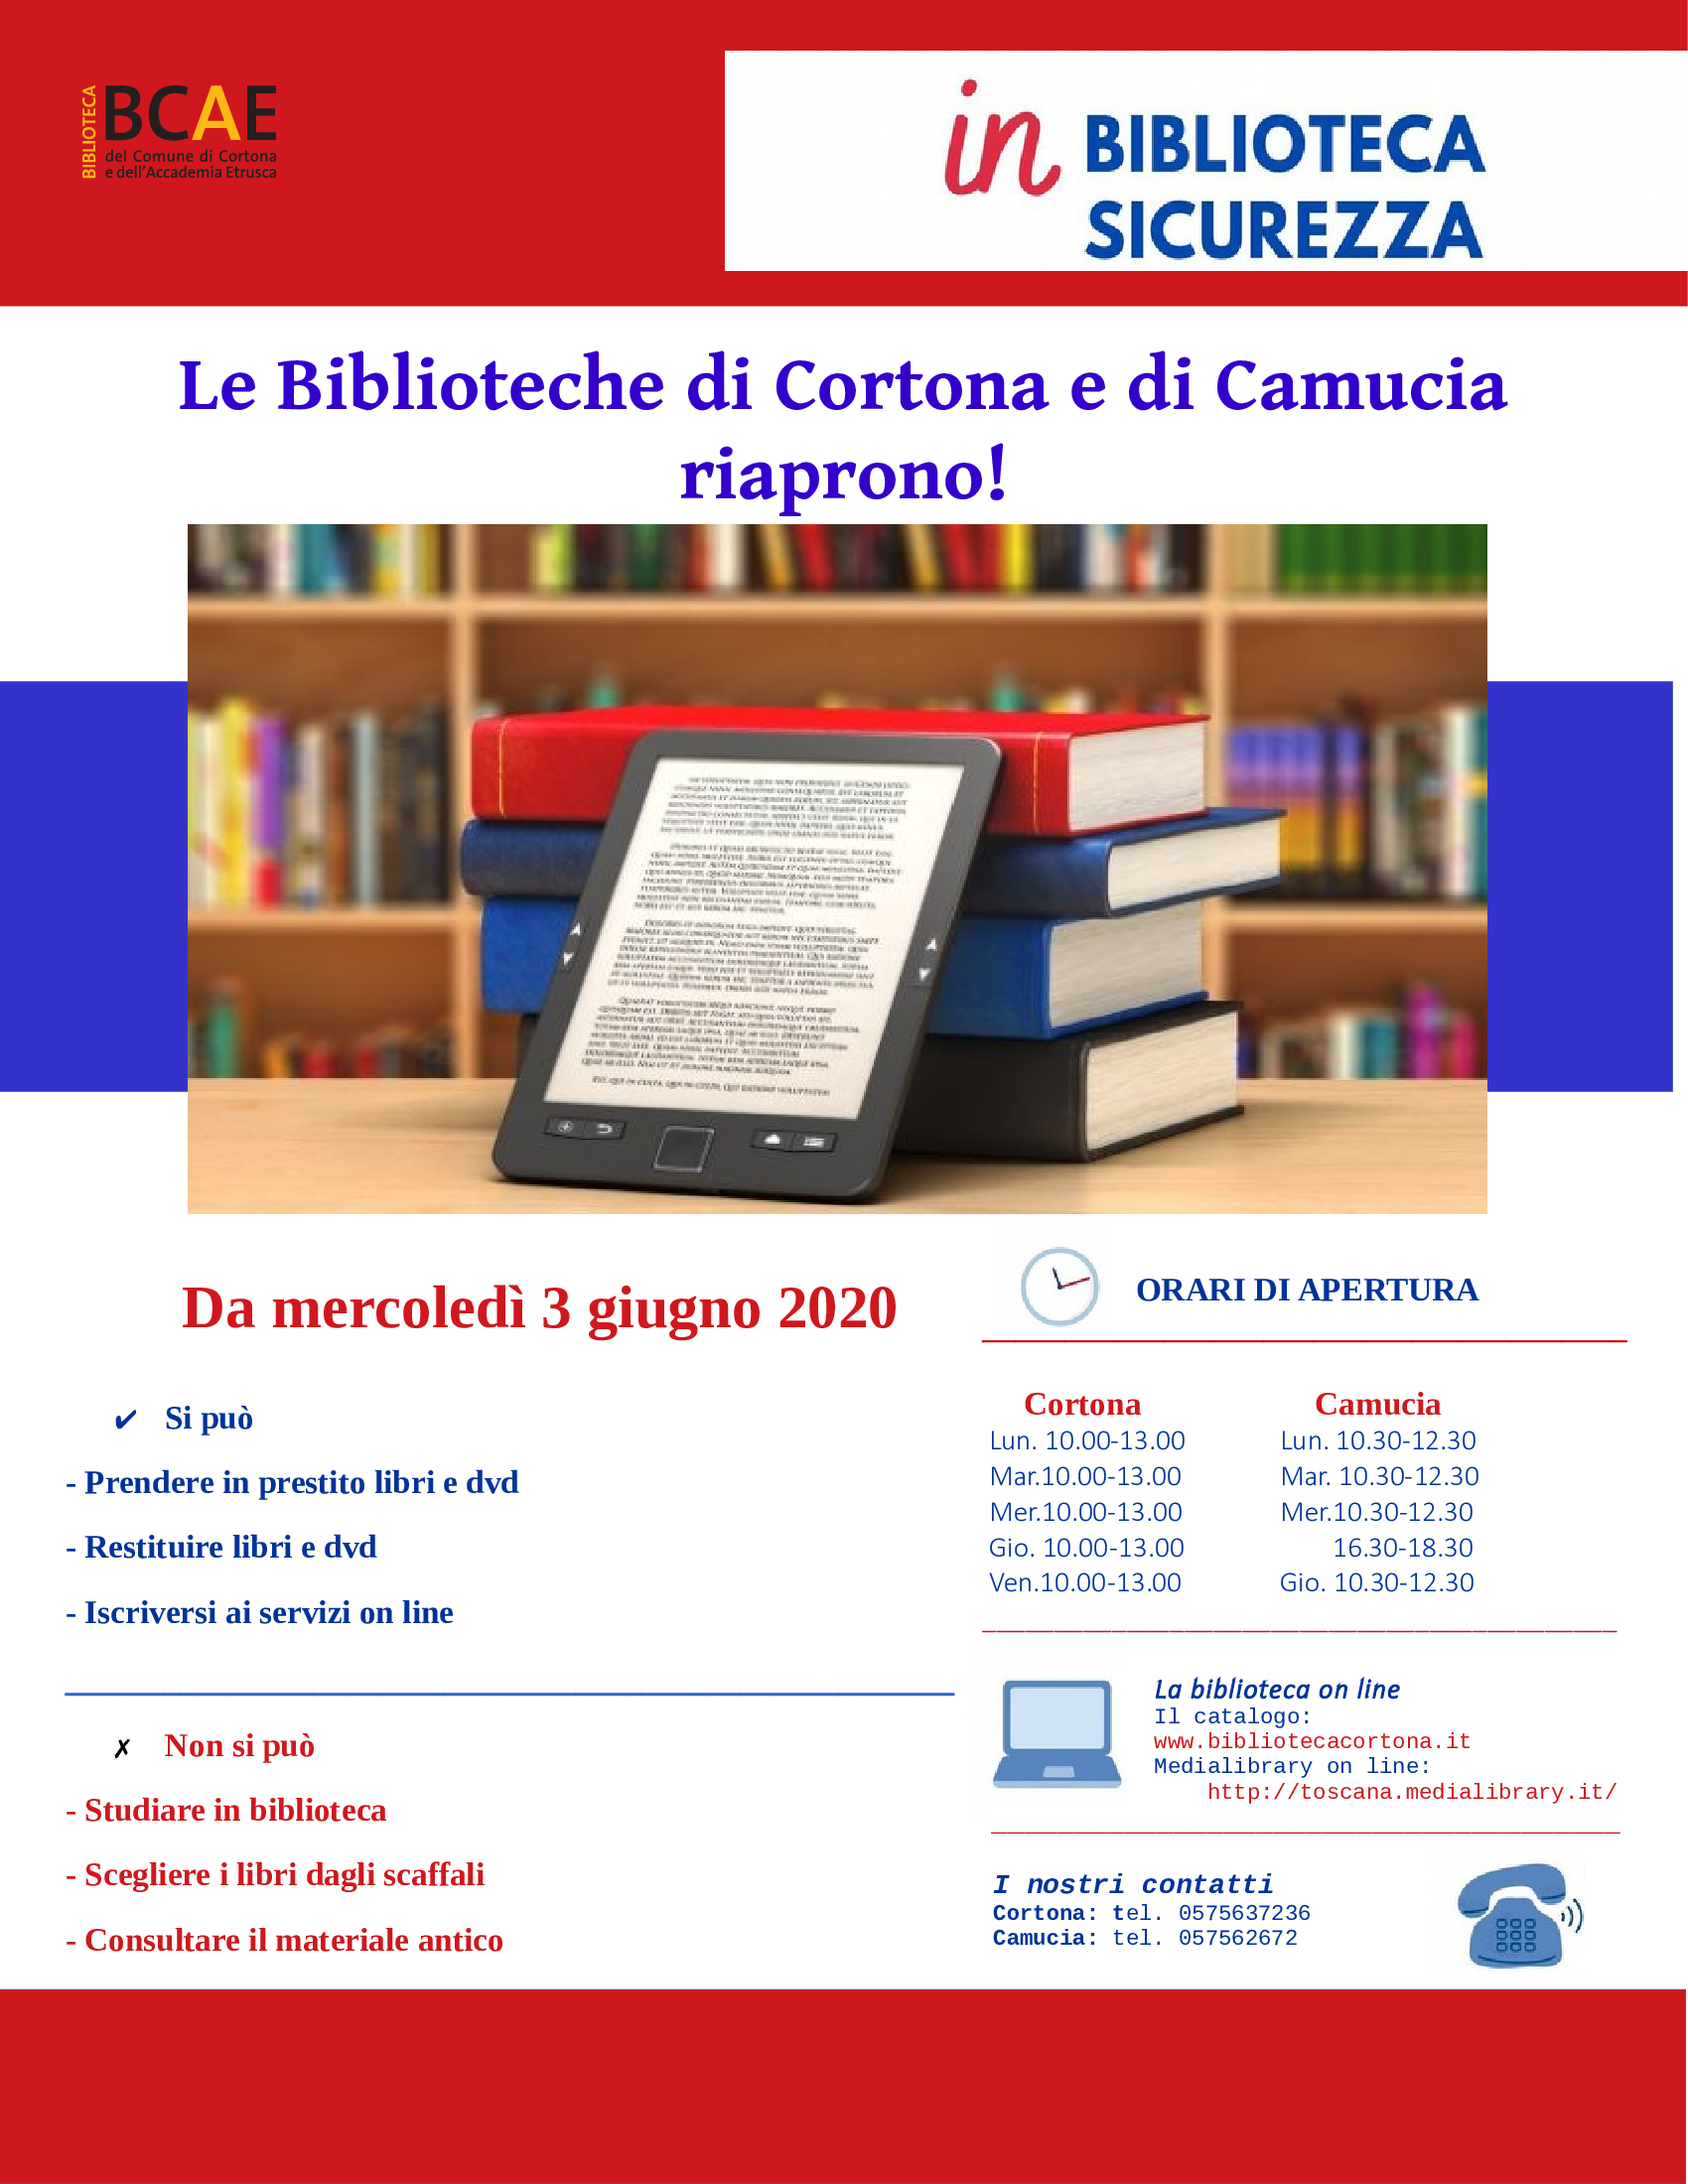 Riaprono le biblioteche di Cortona e Camucia